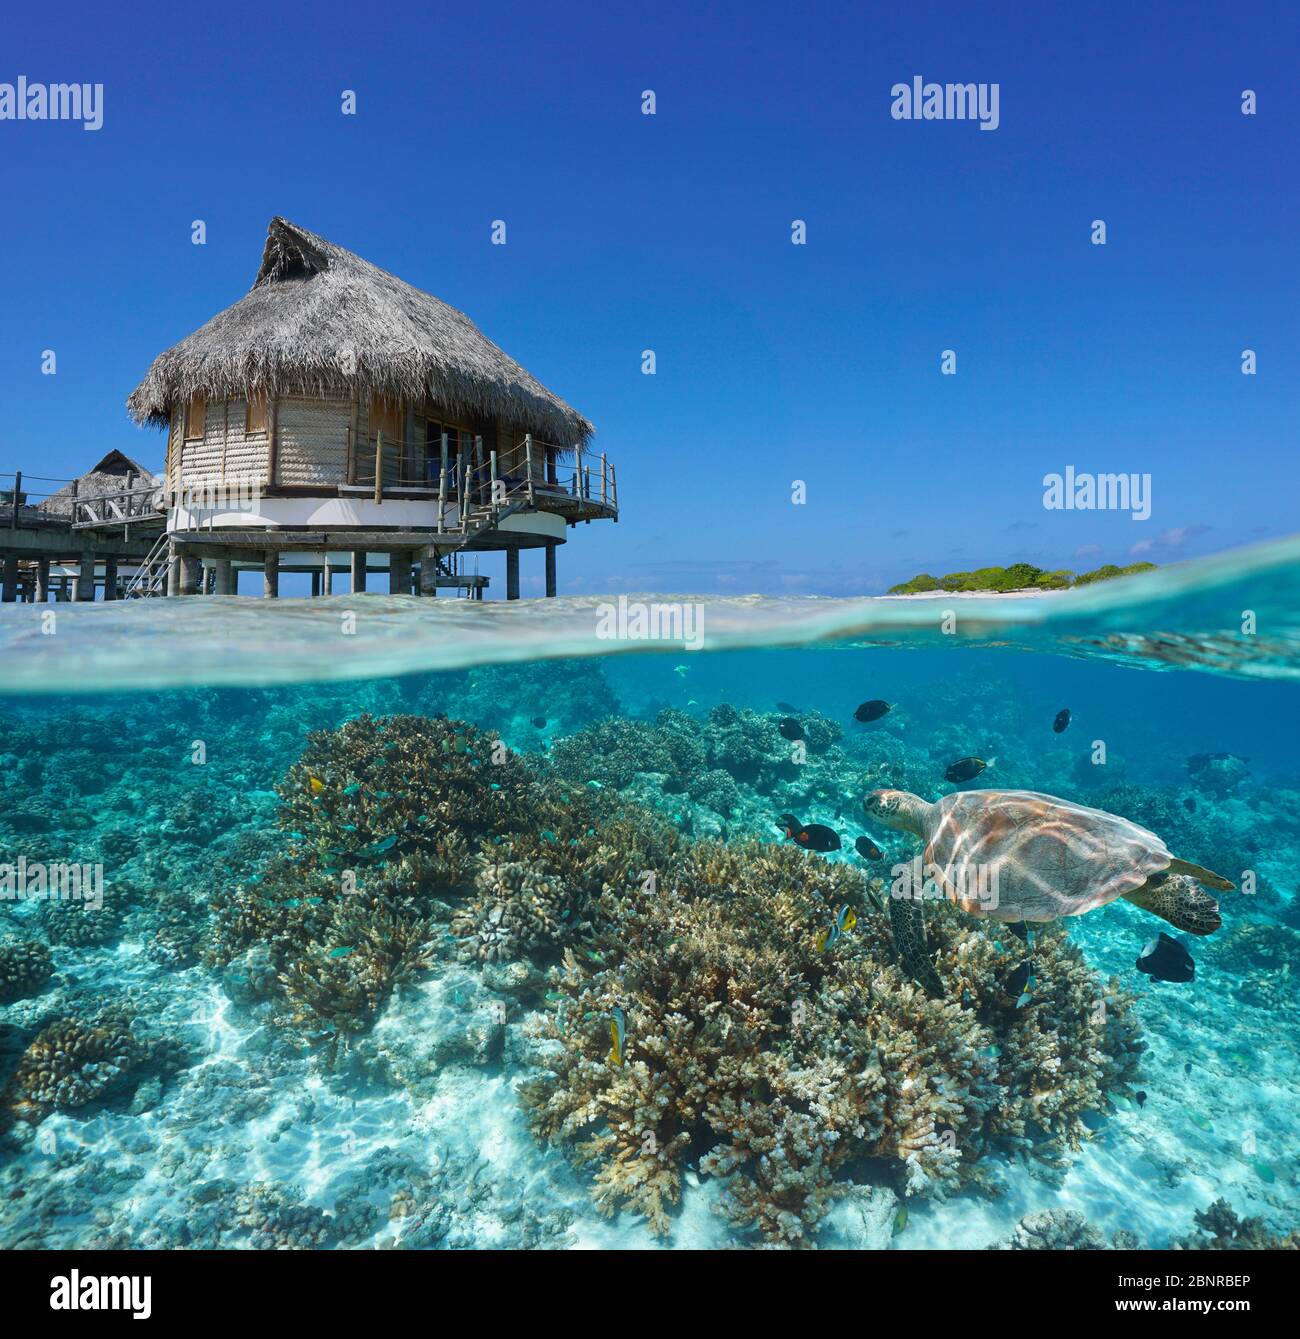 Tropischer Bungalow über Wasser und Korallenriff mit einer Meeresschildkröte unter Wasser, Split-Blick über und unter Wasser Oberfläche, Französisch-Polynesien, Pazifischer Ozean Stockfoto